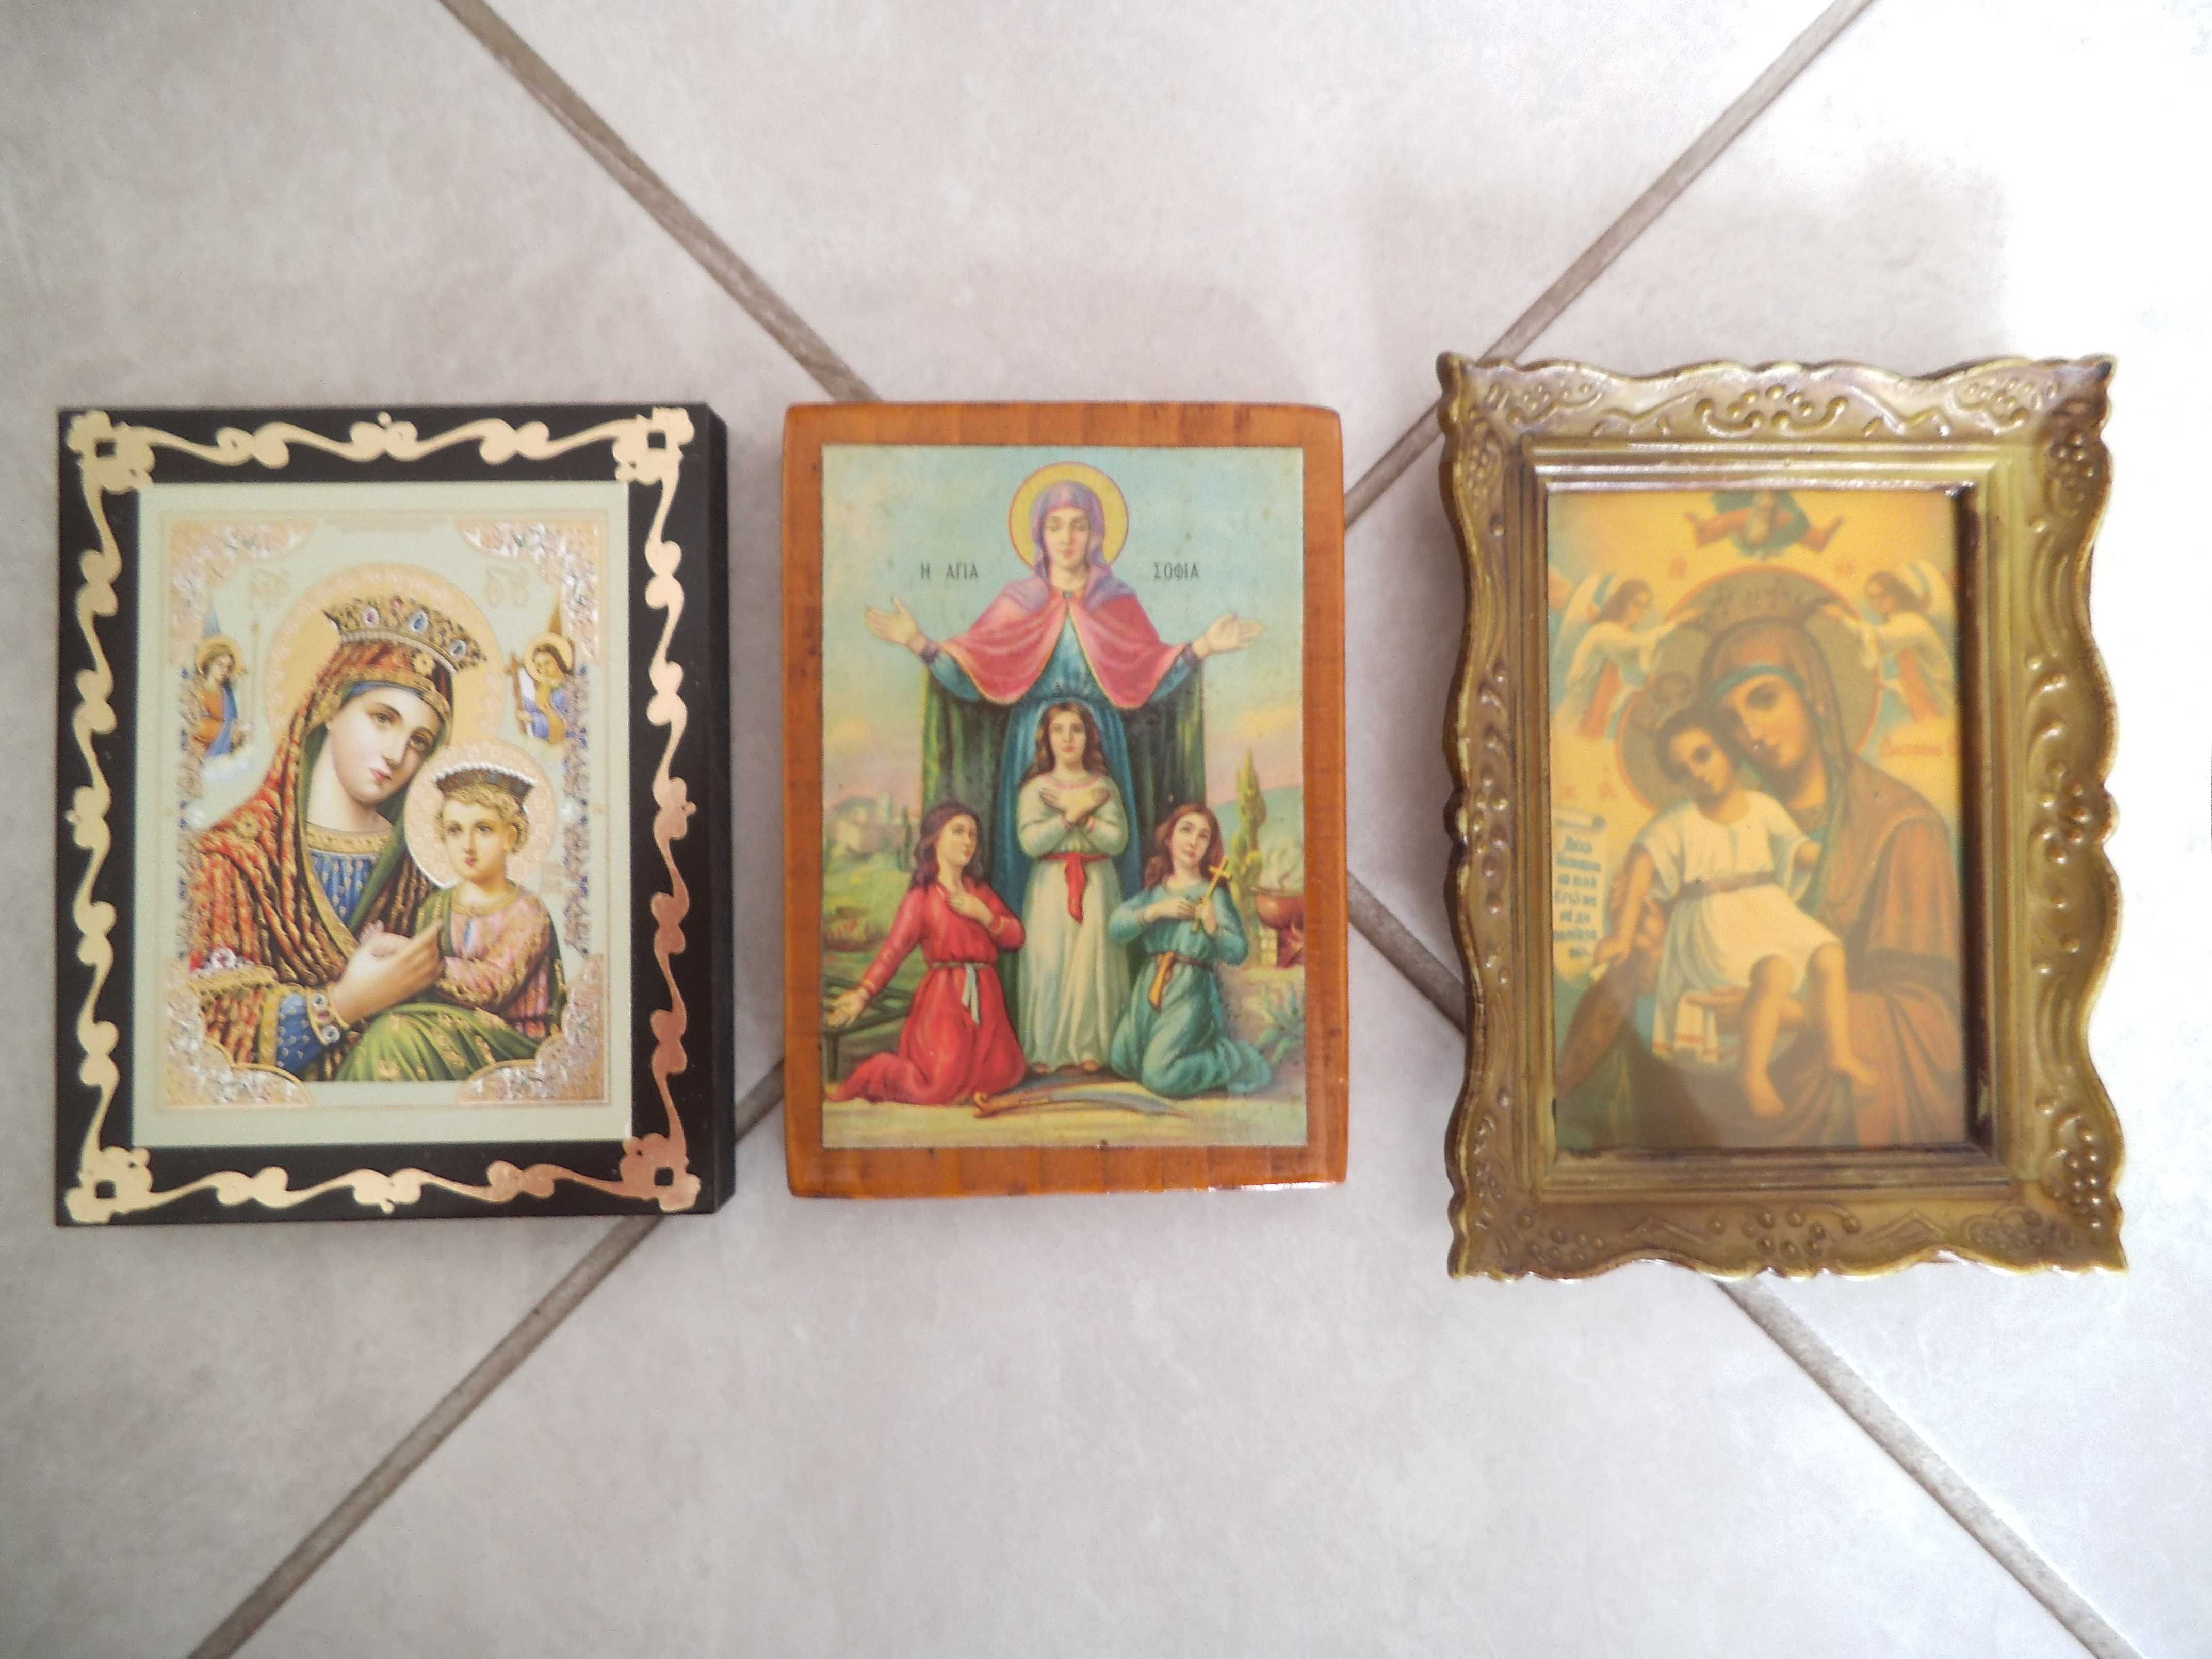 Православни икони